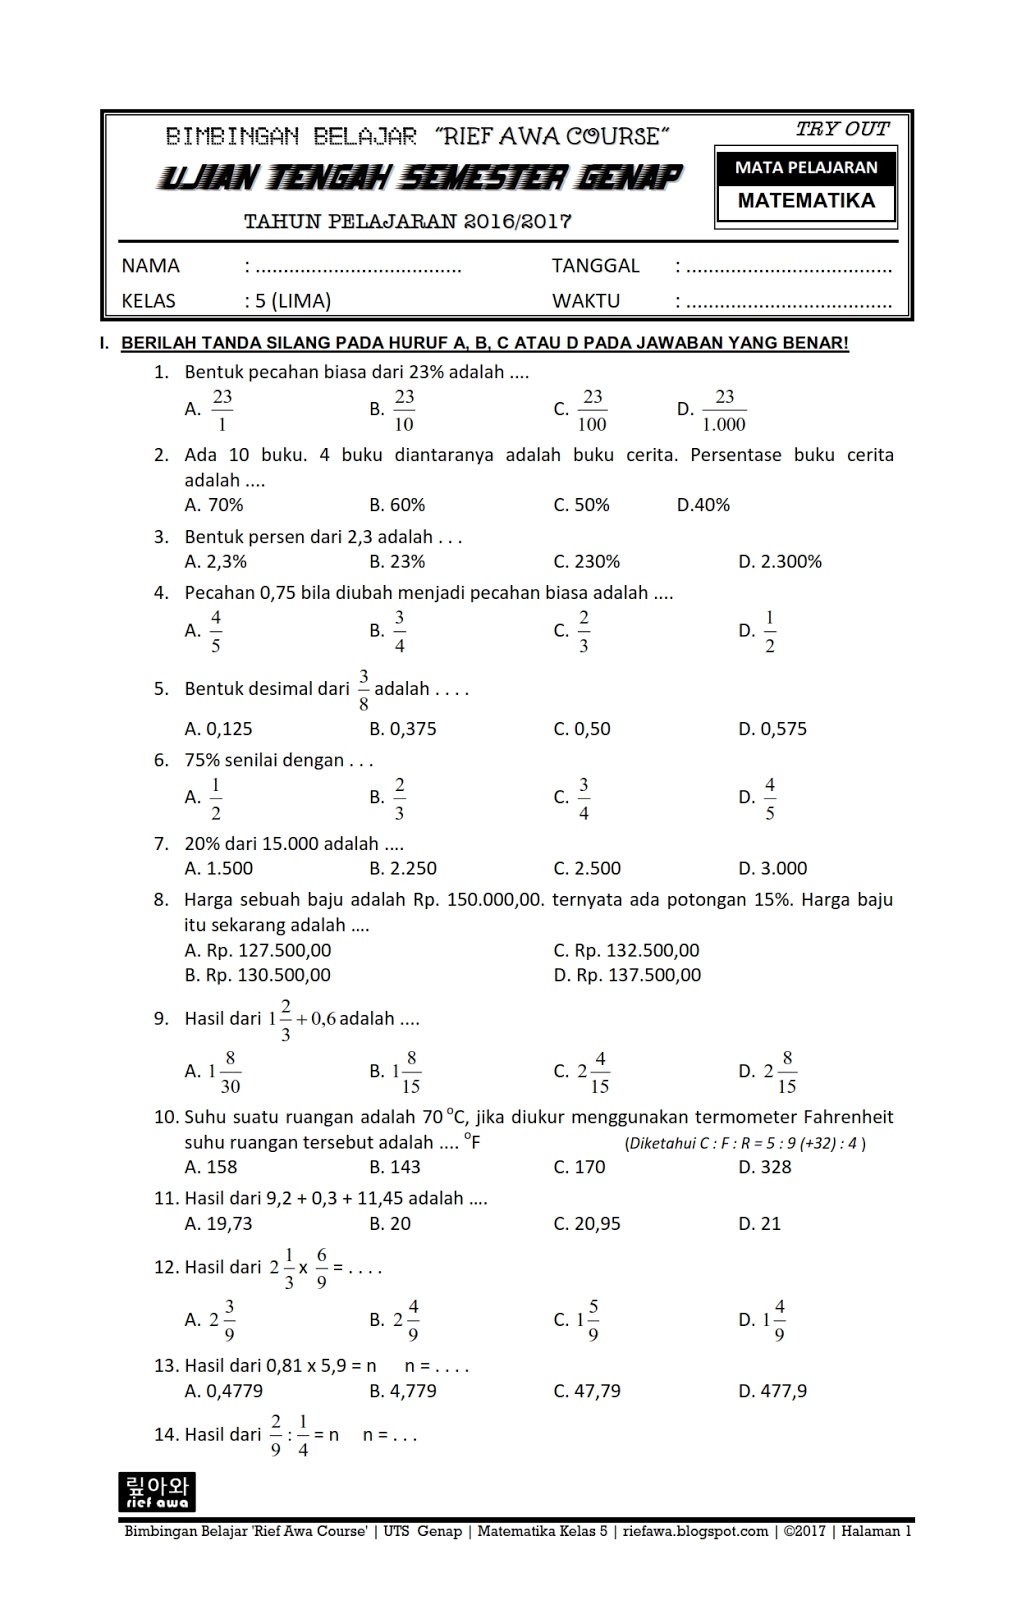 Kumpulan Soal Matematika Kelas 5 Semester 2 Kurikulum 2013 - Homecare24